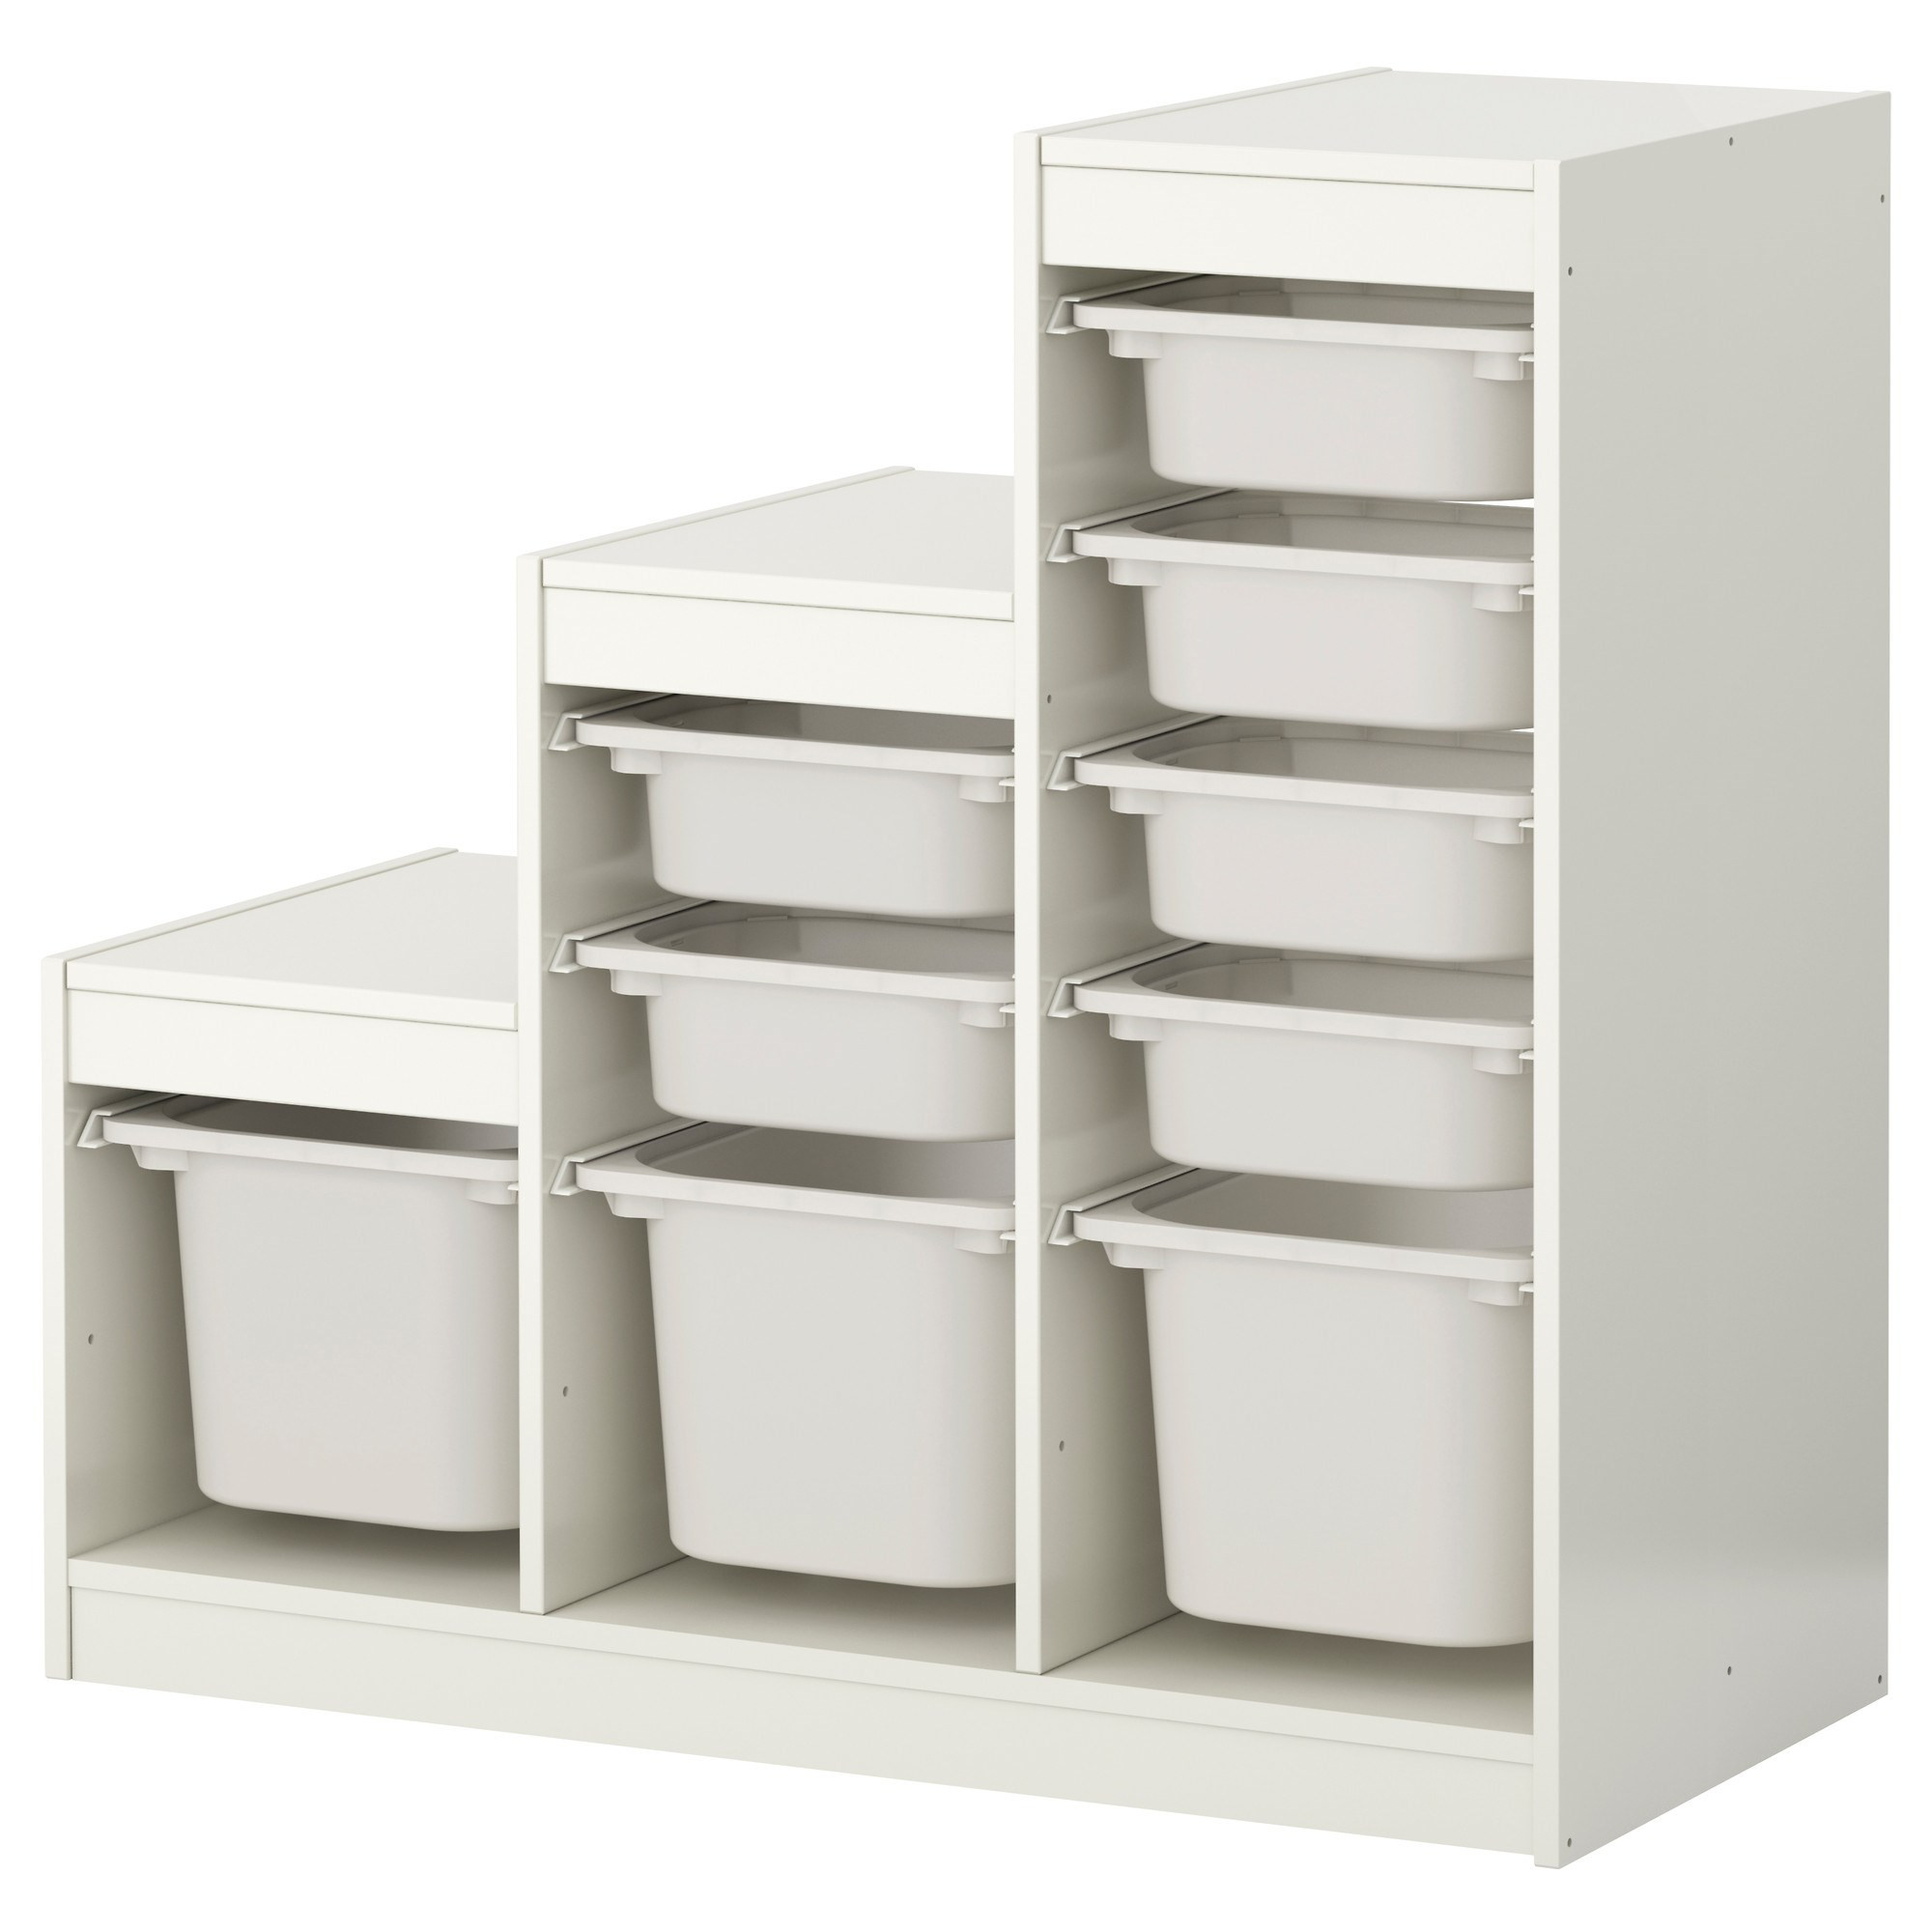 Ikea Childrens Storage
 TROFAST storage unit white 99x44x94 cm